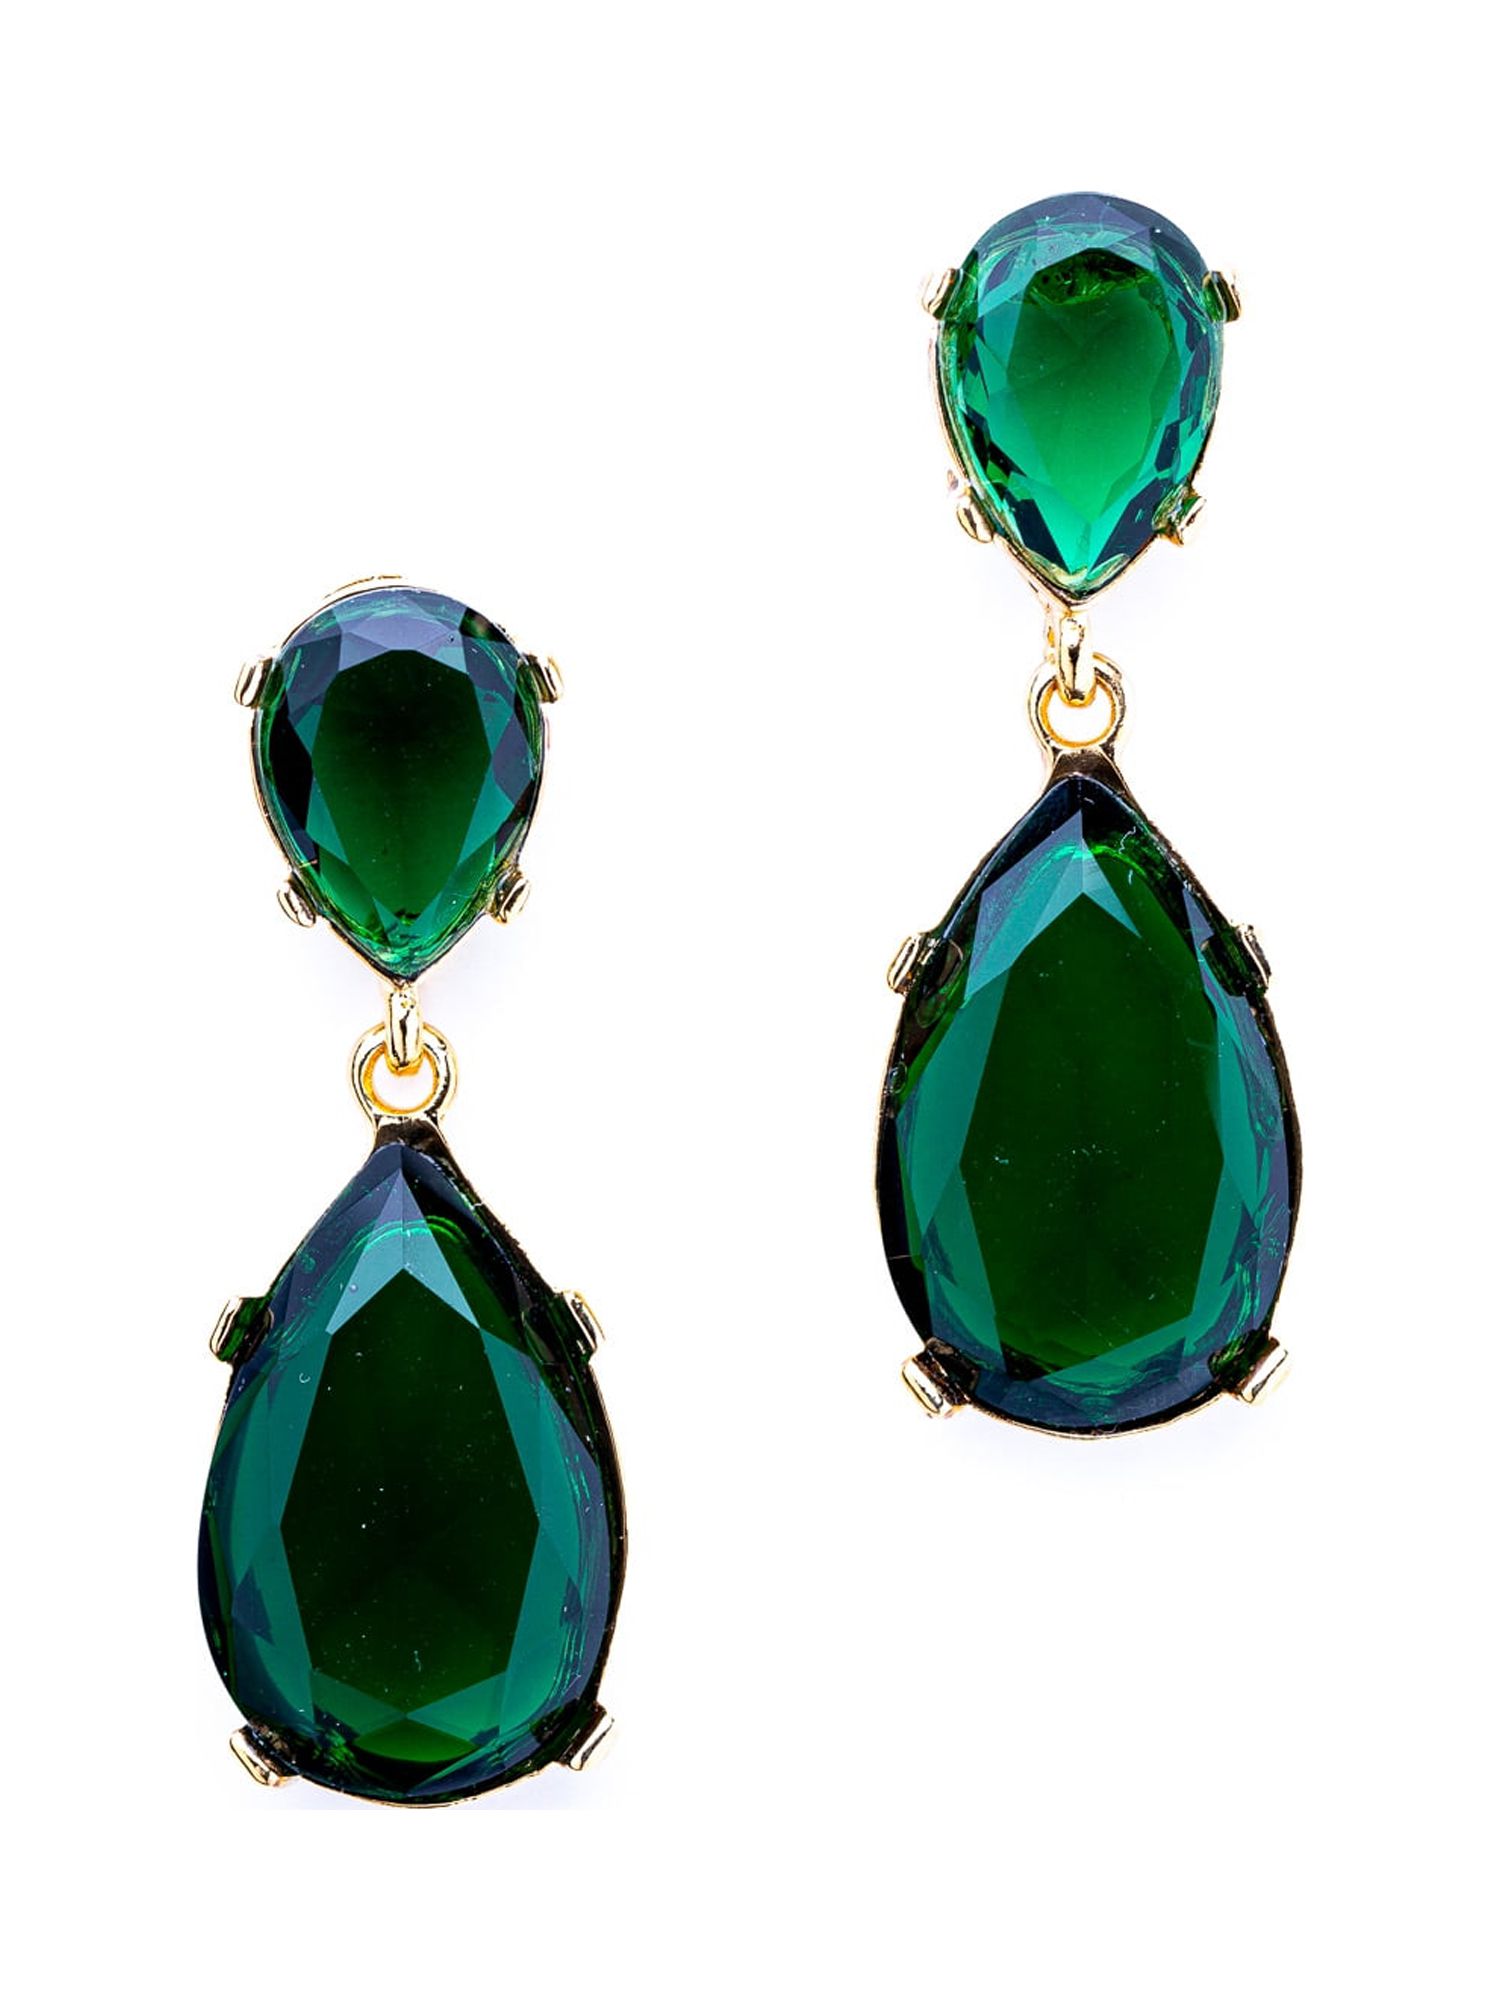 Emerald Teardrop Pierced Earrings - image 1 of 2